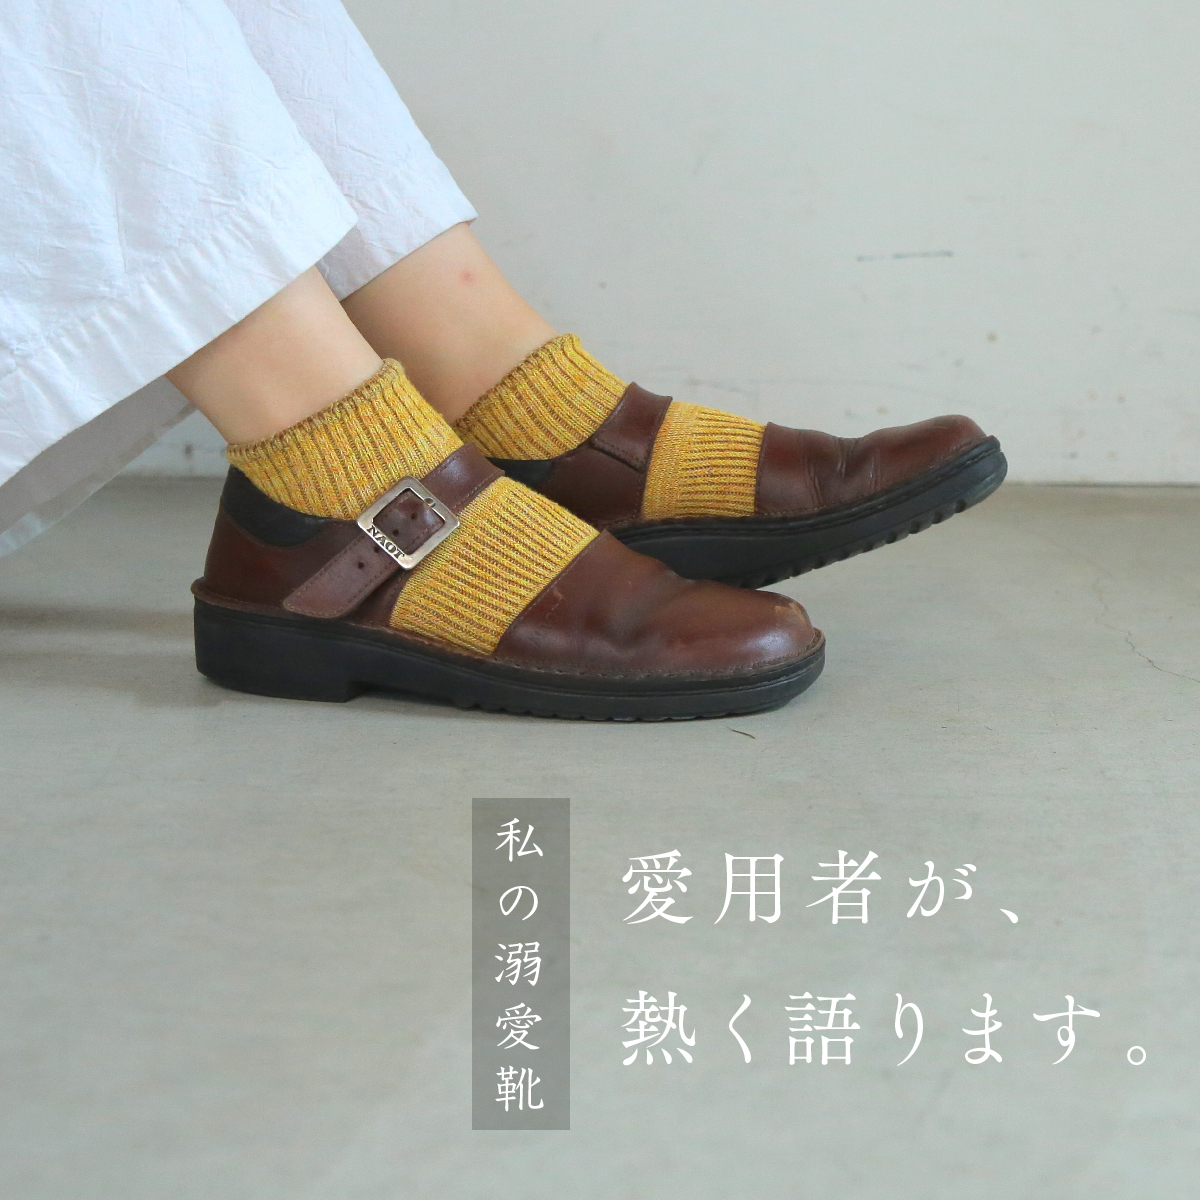 私の溺愛靴 -スタッフ木村のOLGA編- | NAOT ナオトジャパン